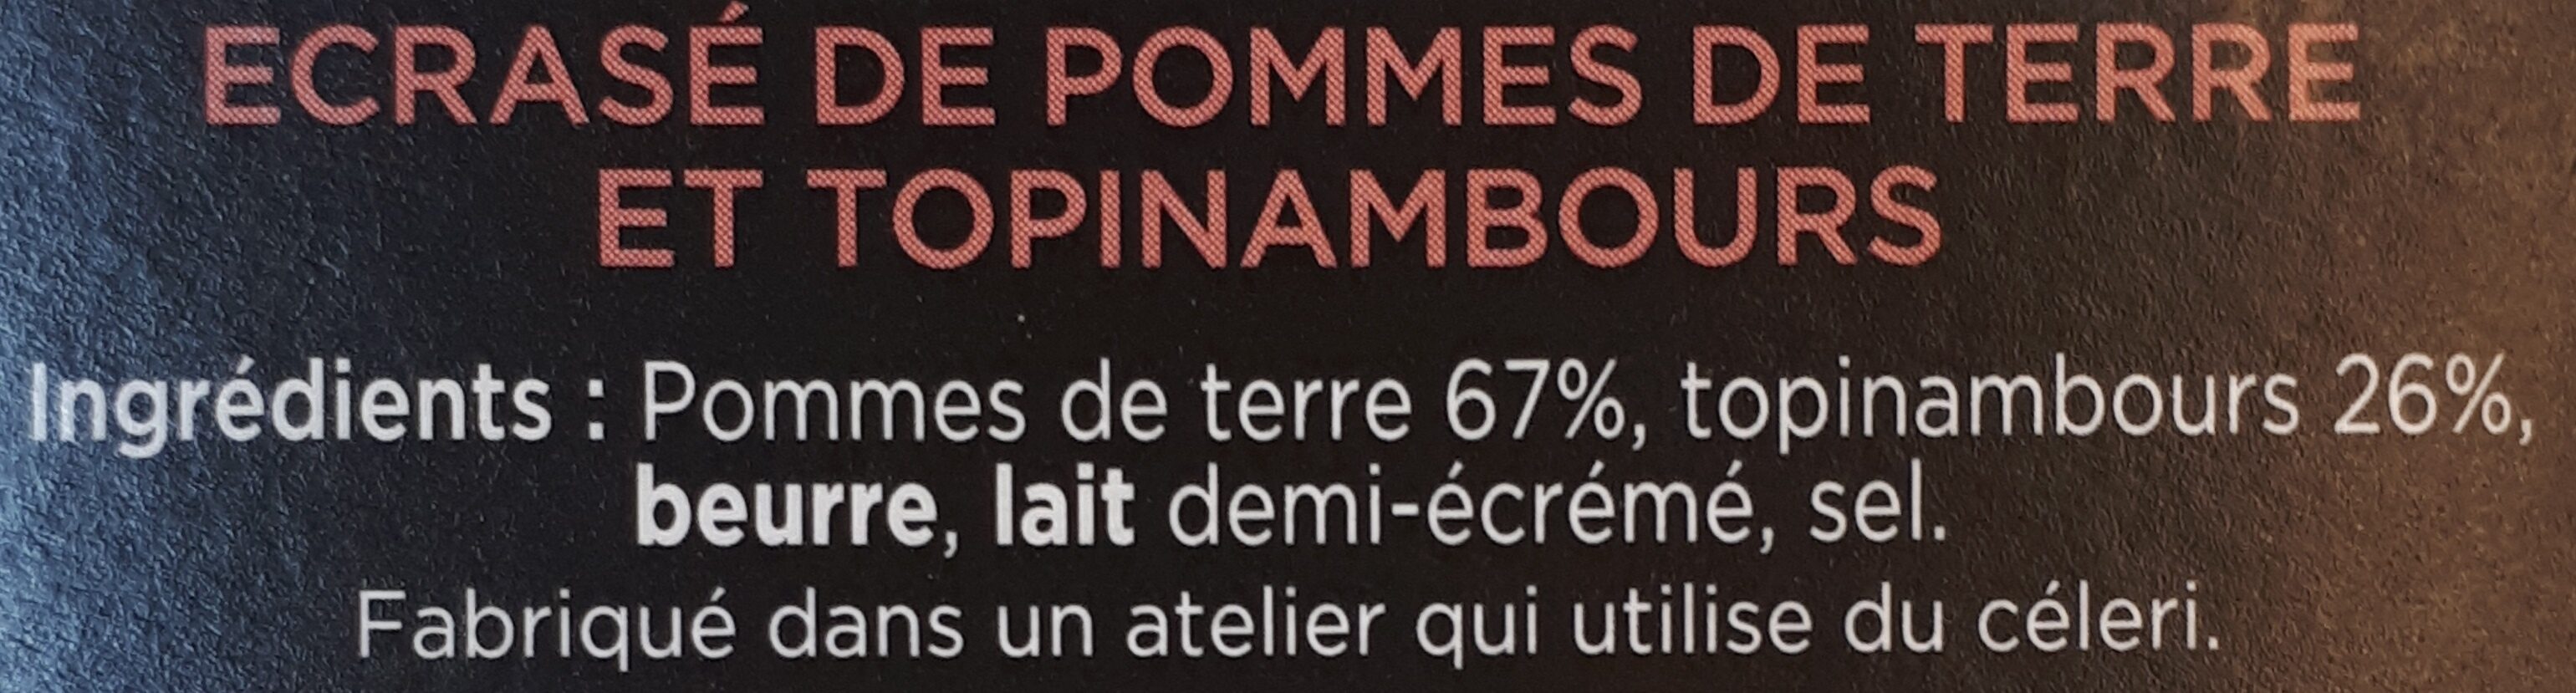 Ecrasé De Pommes De Terre Topinambour Créaline - Ingrediënten - fr